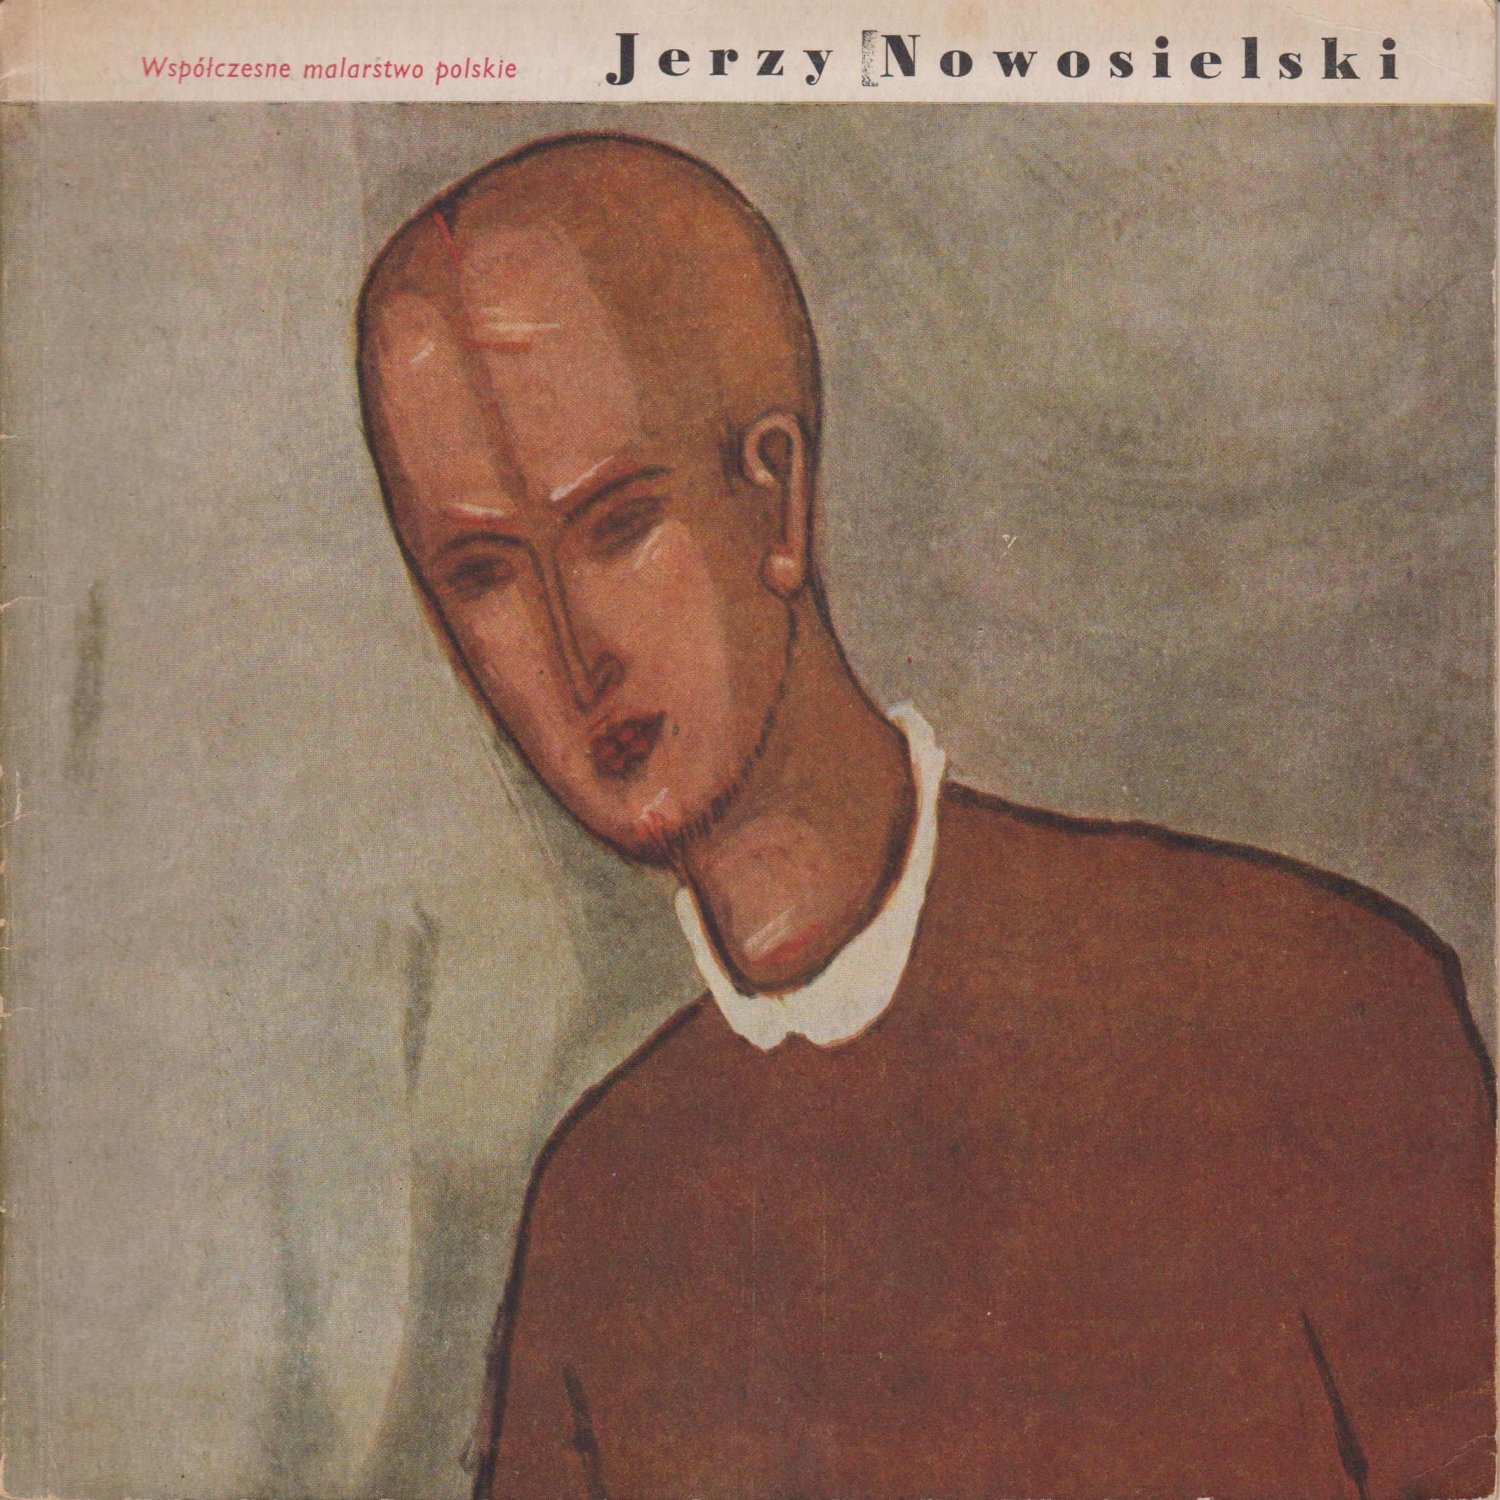 NOWOSIELSKI, Jerzy / Potworowski, Piotr (Editor):  Jerzy Nowosielski. Opracoroanie Mieczyslawa Porebskiego. 